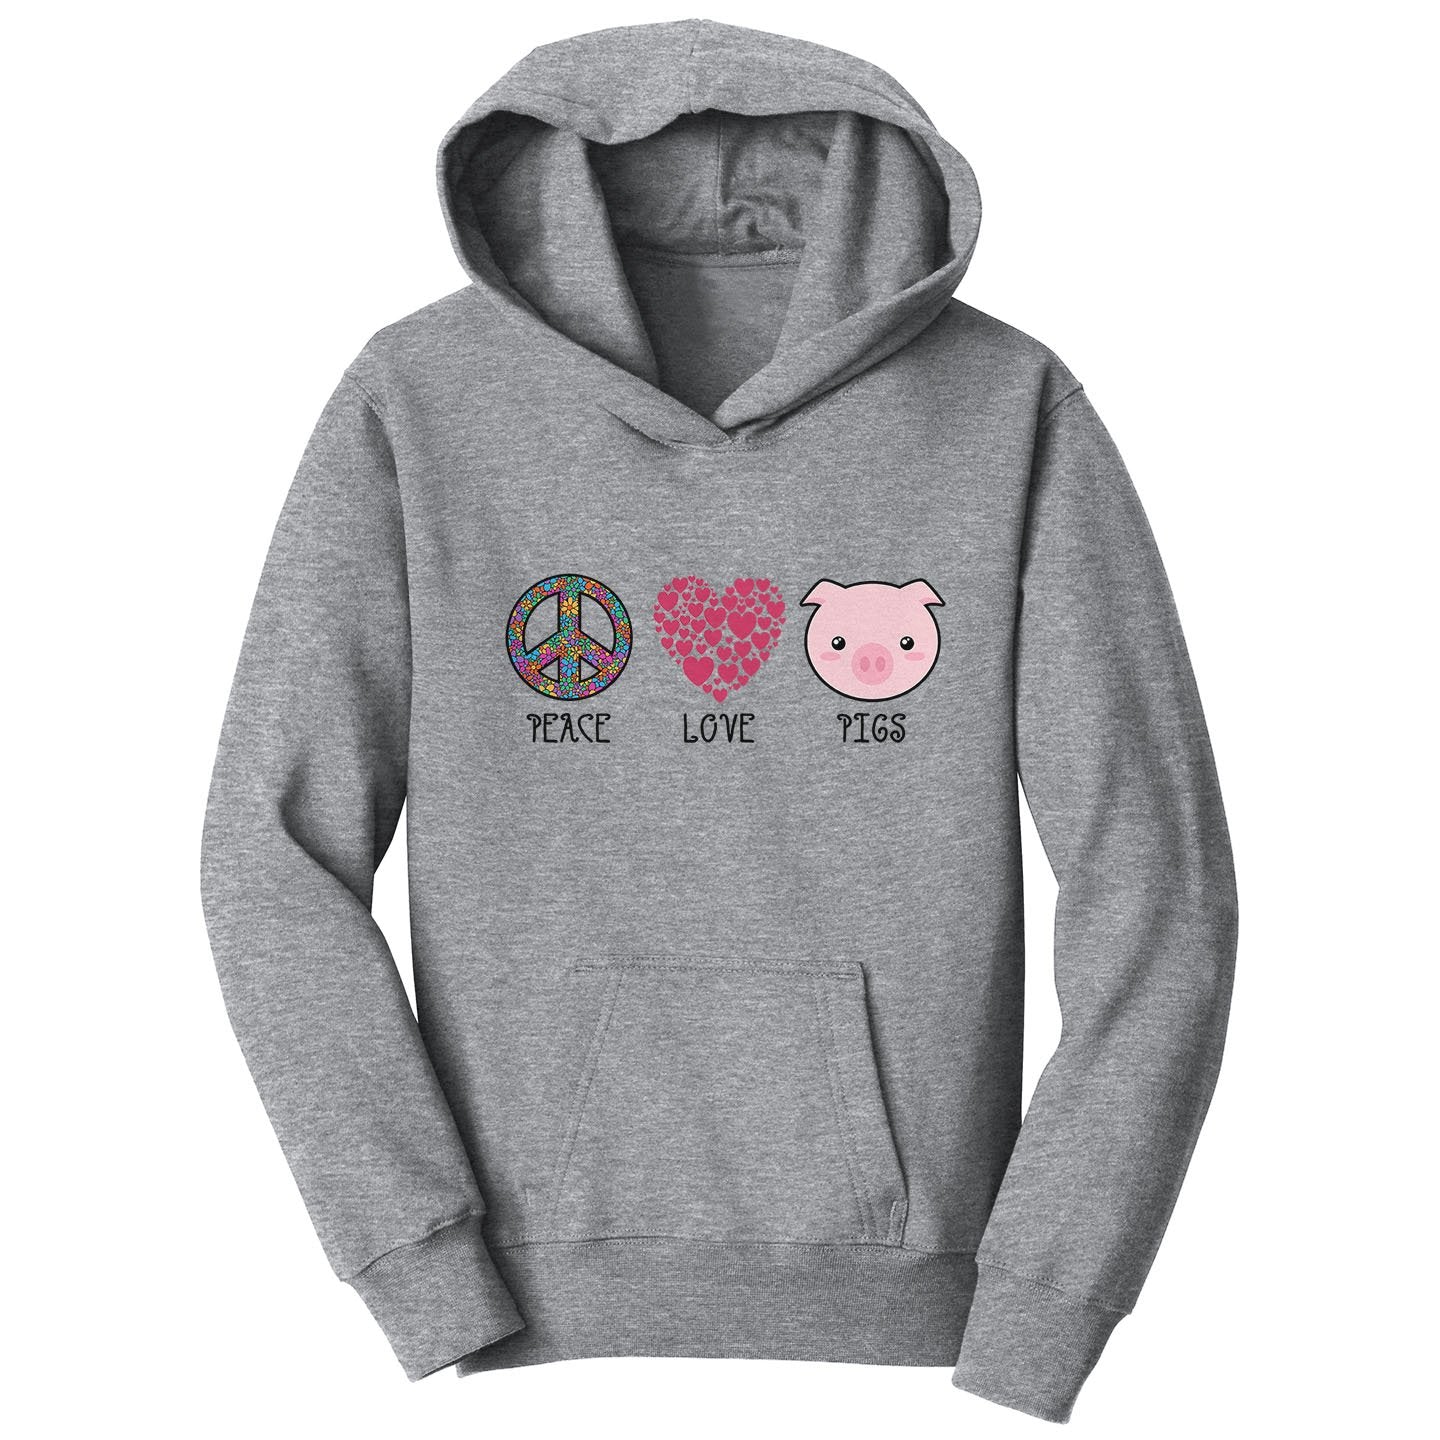 Peace Love Pigs - Kids' Unisex Hoodie Sweatshirt